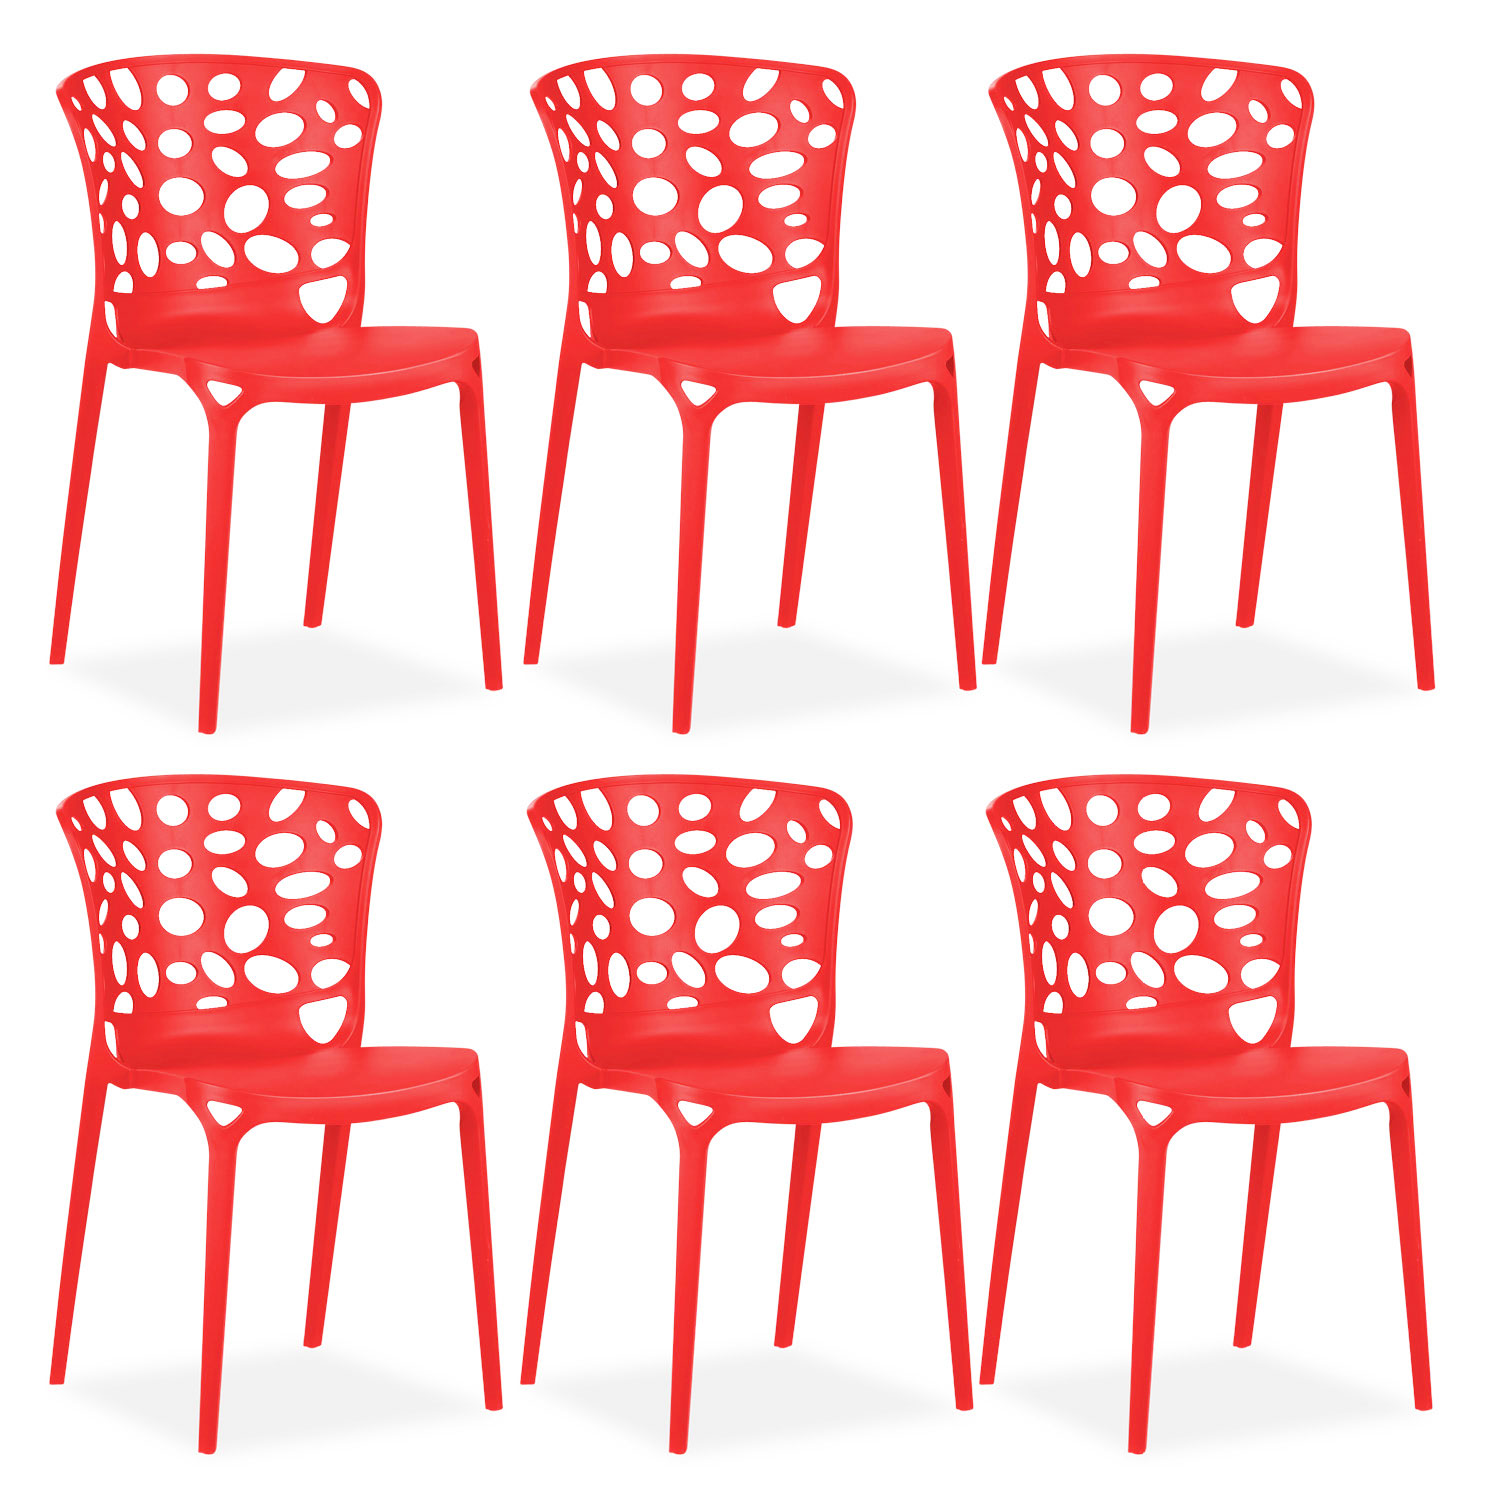 Gartenstuhl Set 2, 4, 6 Stühle Modern verschiedene Farben Küchenstühle Kunststoff Stapelstühle Balkonstuhl Outdoor-Stuhl